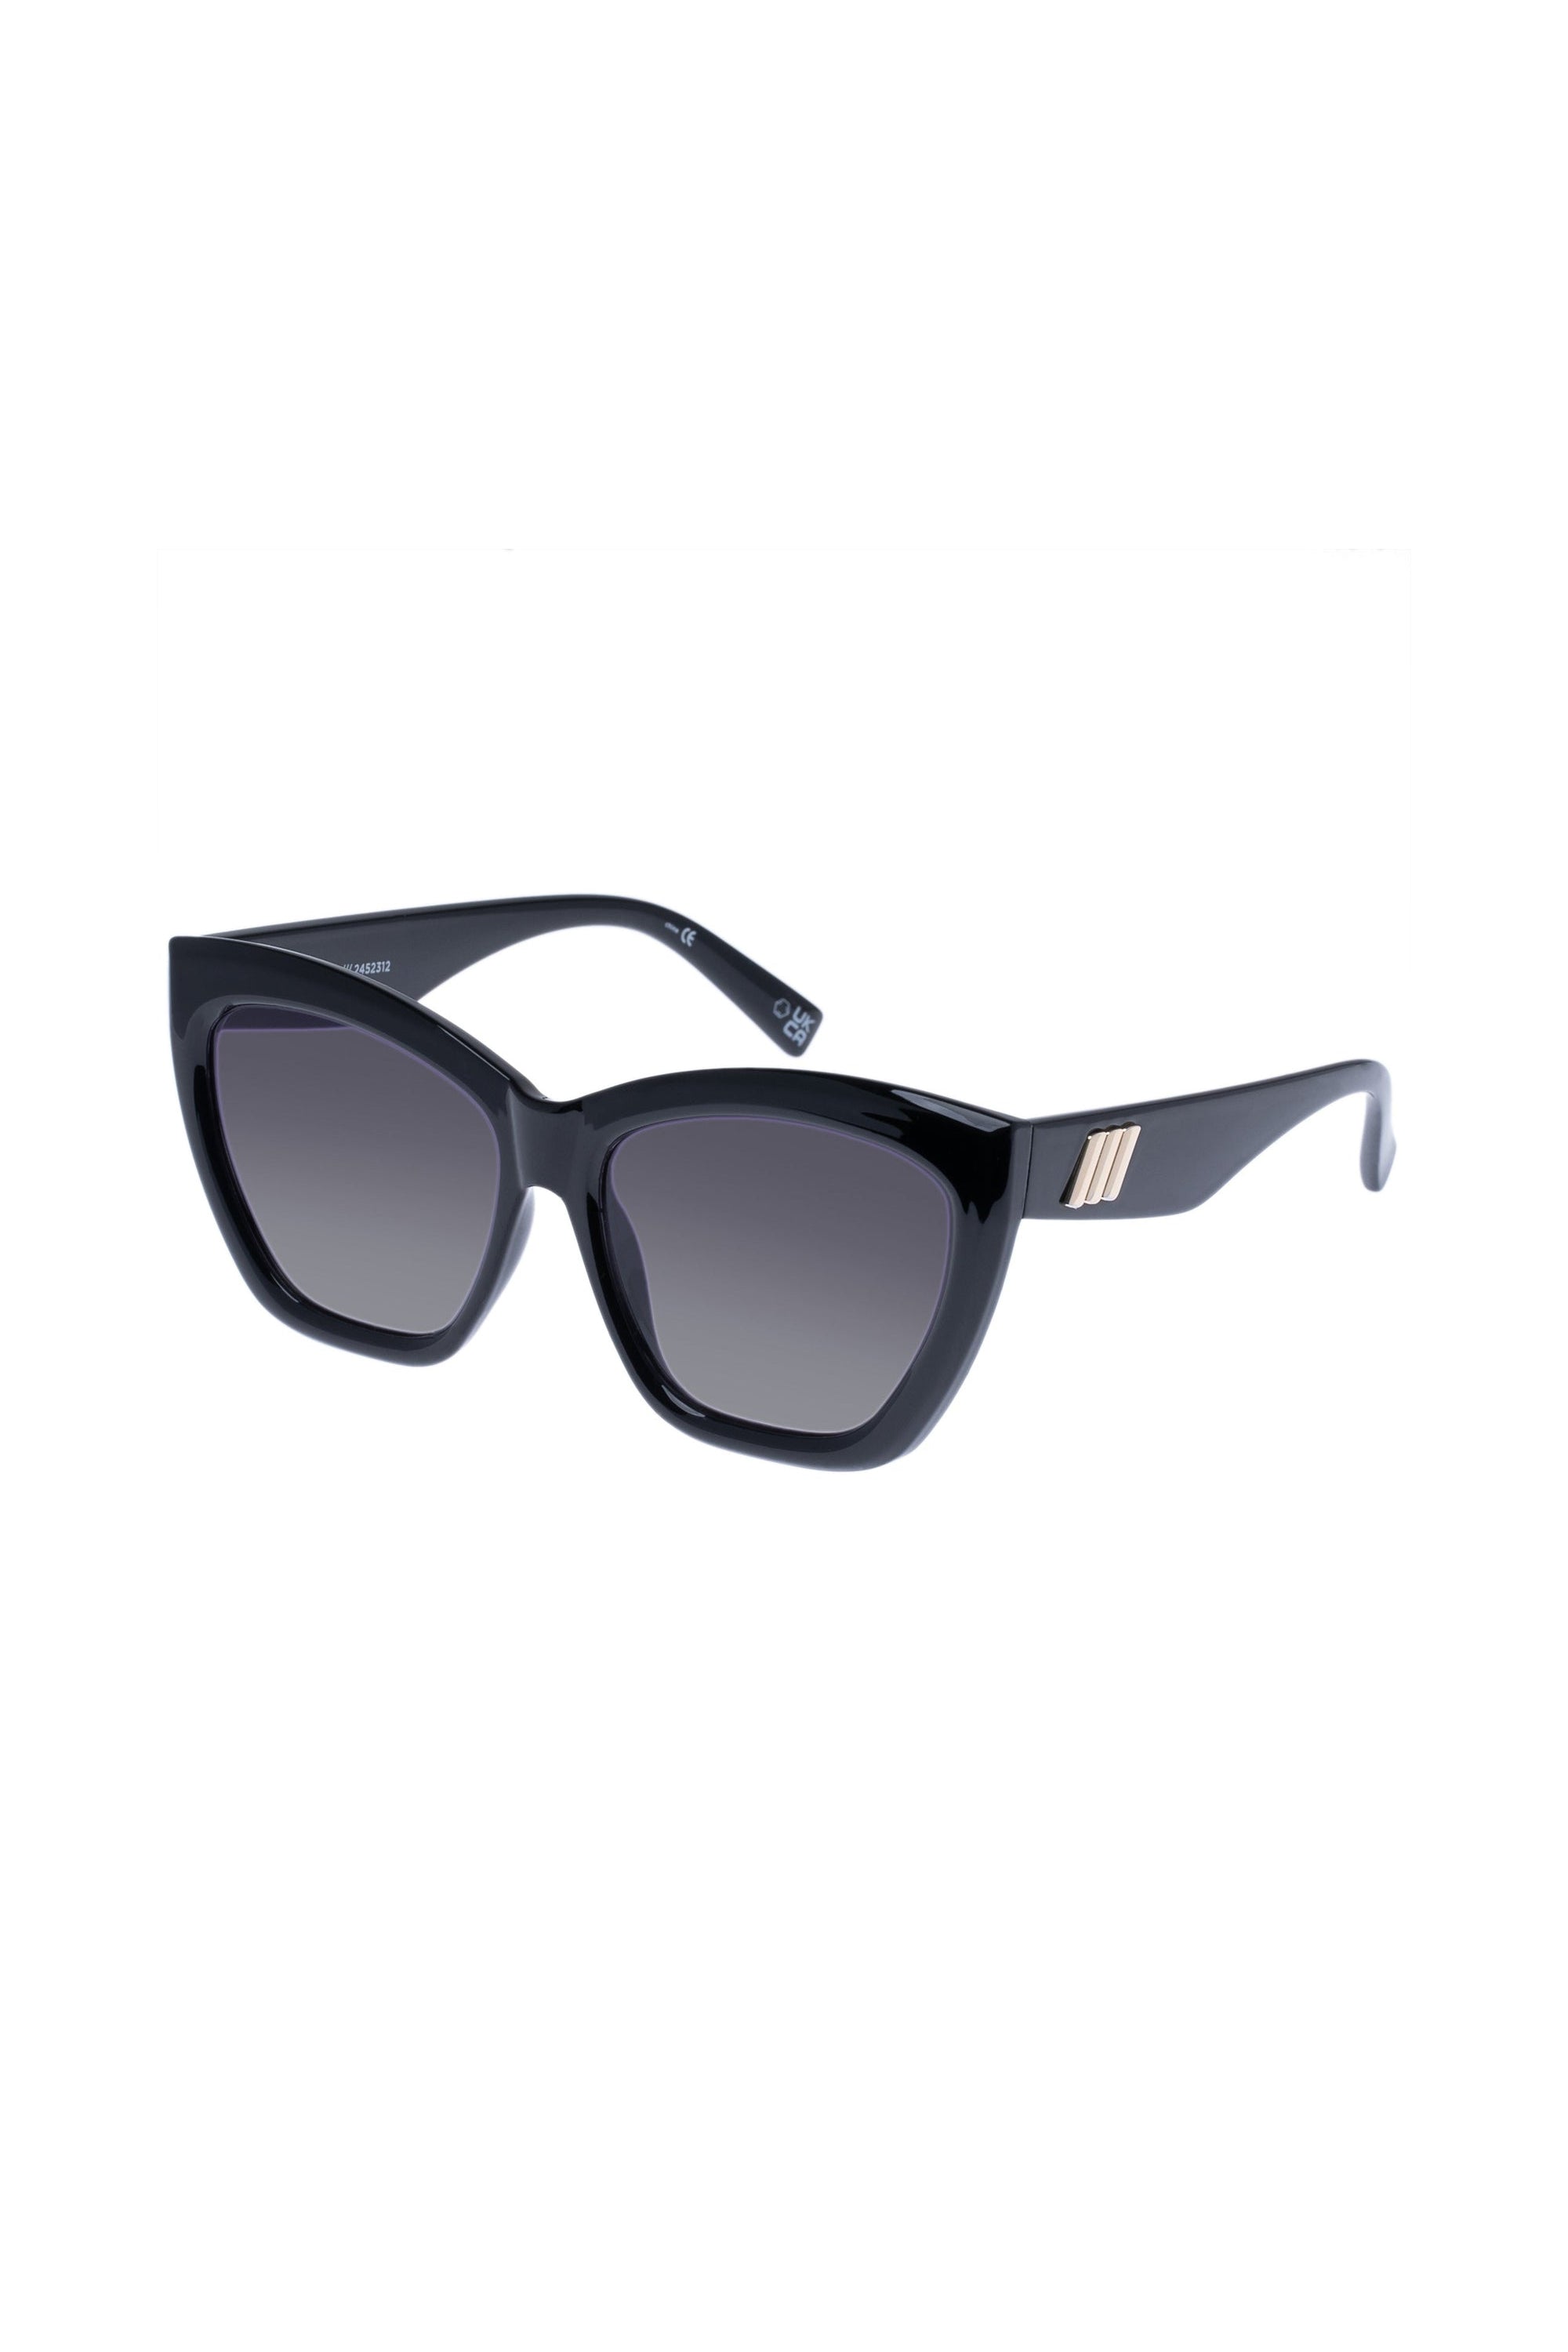 Le Specs Vamos Sunglasses - Black - RUM Amsterdam